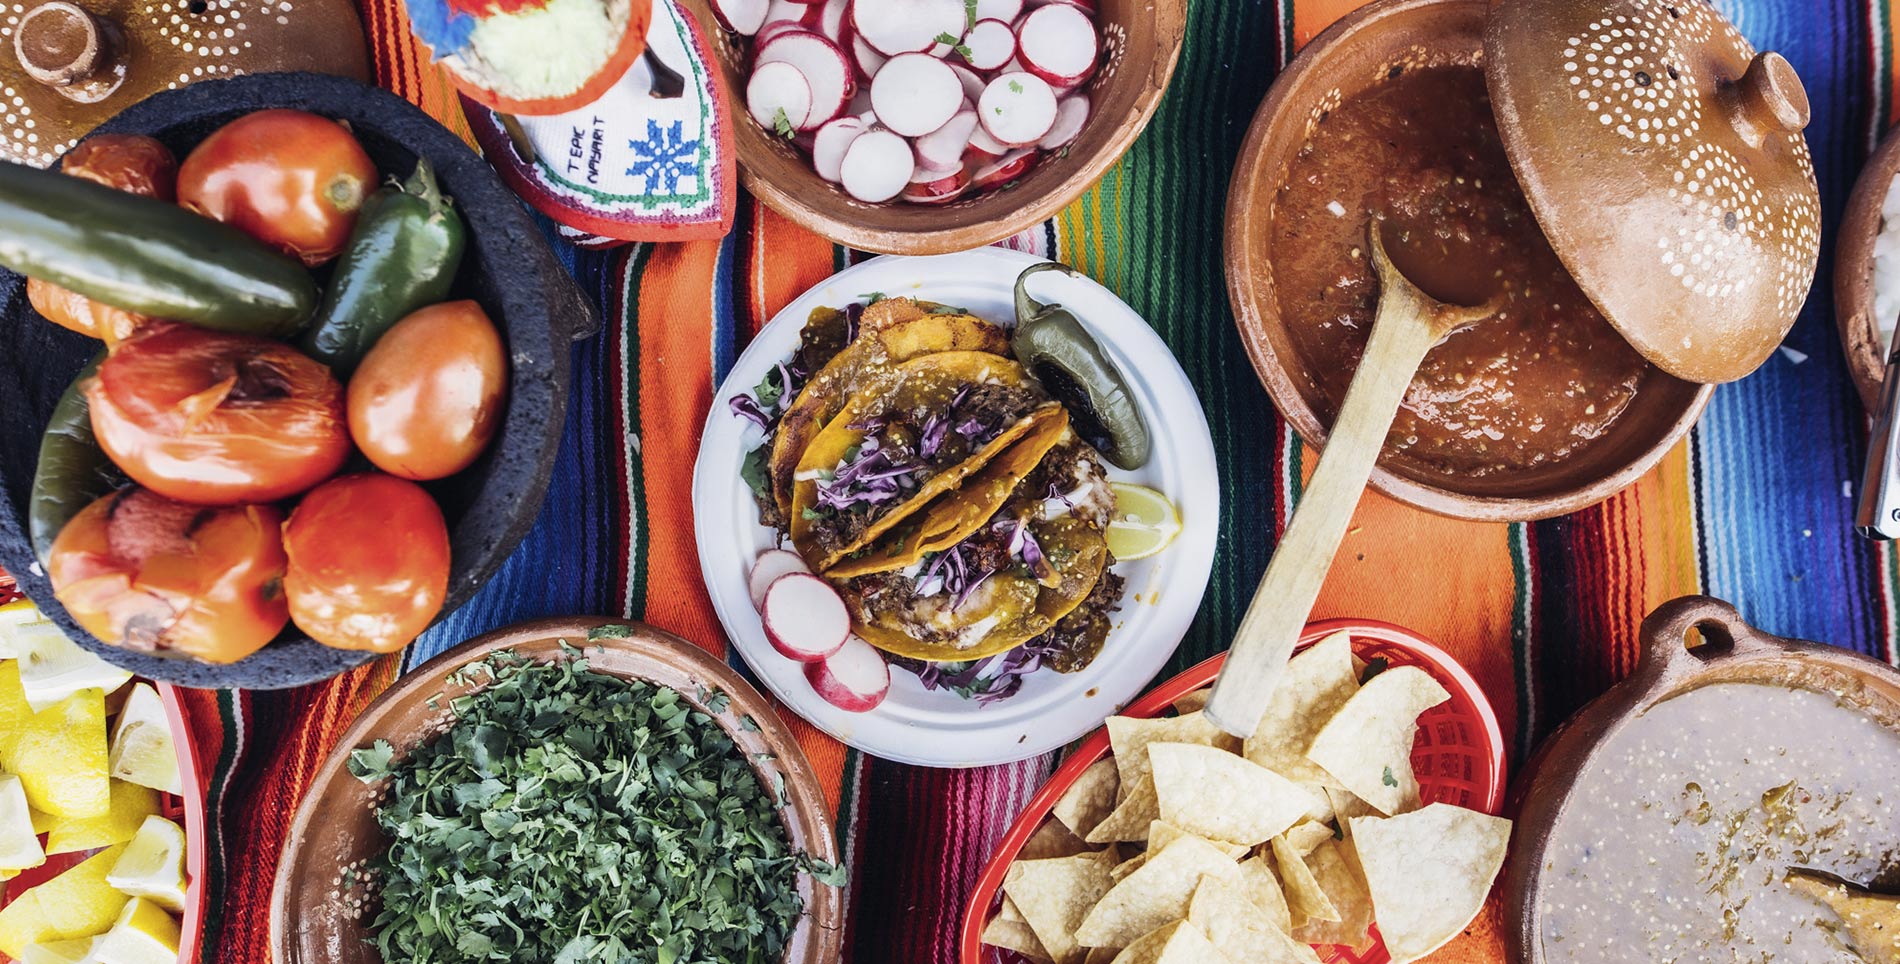 Quesabirria: A Family Affair at Pobres Tacos